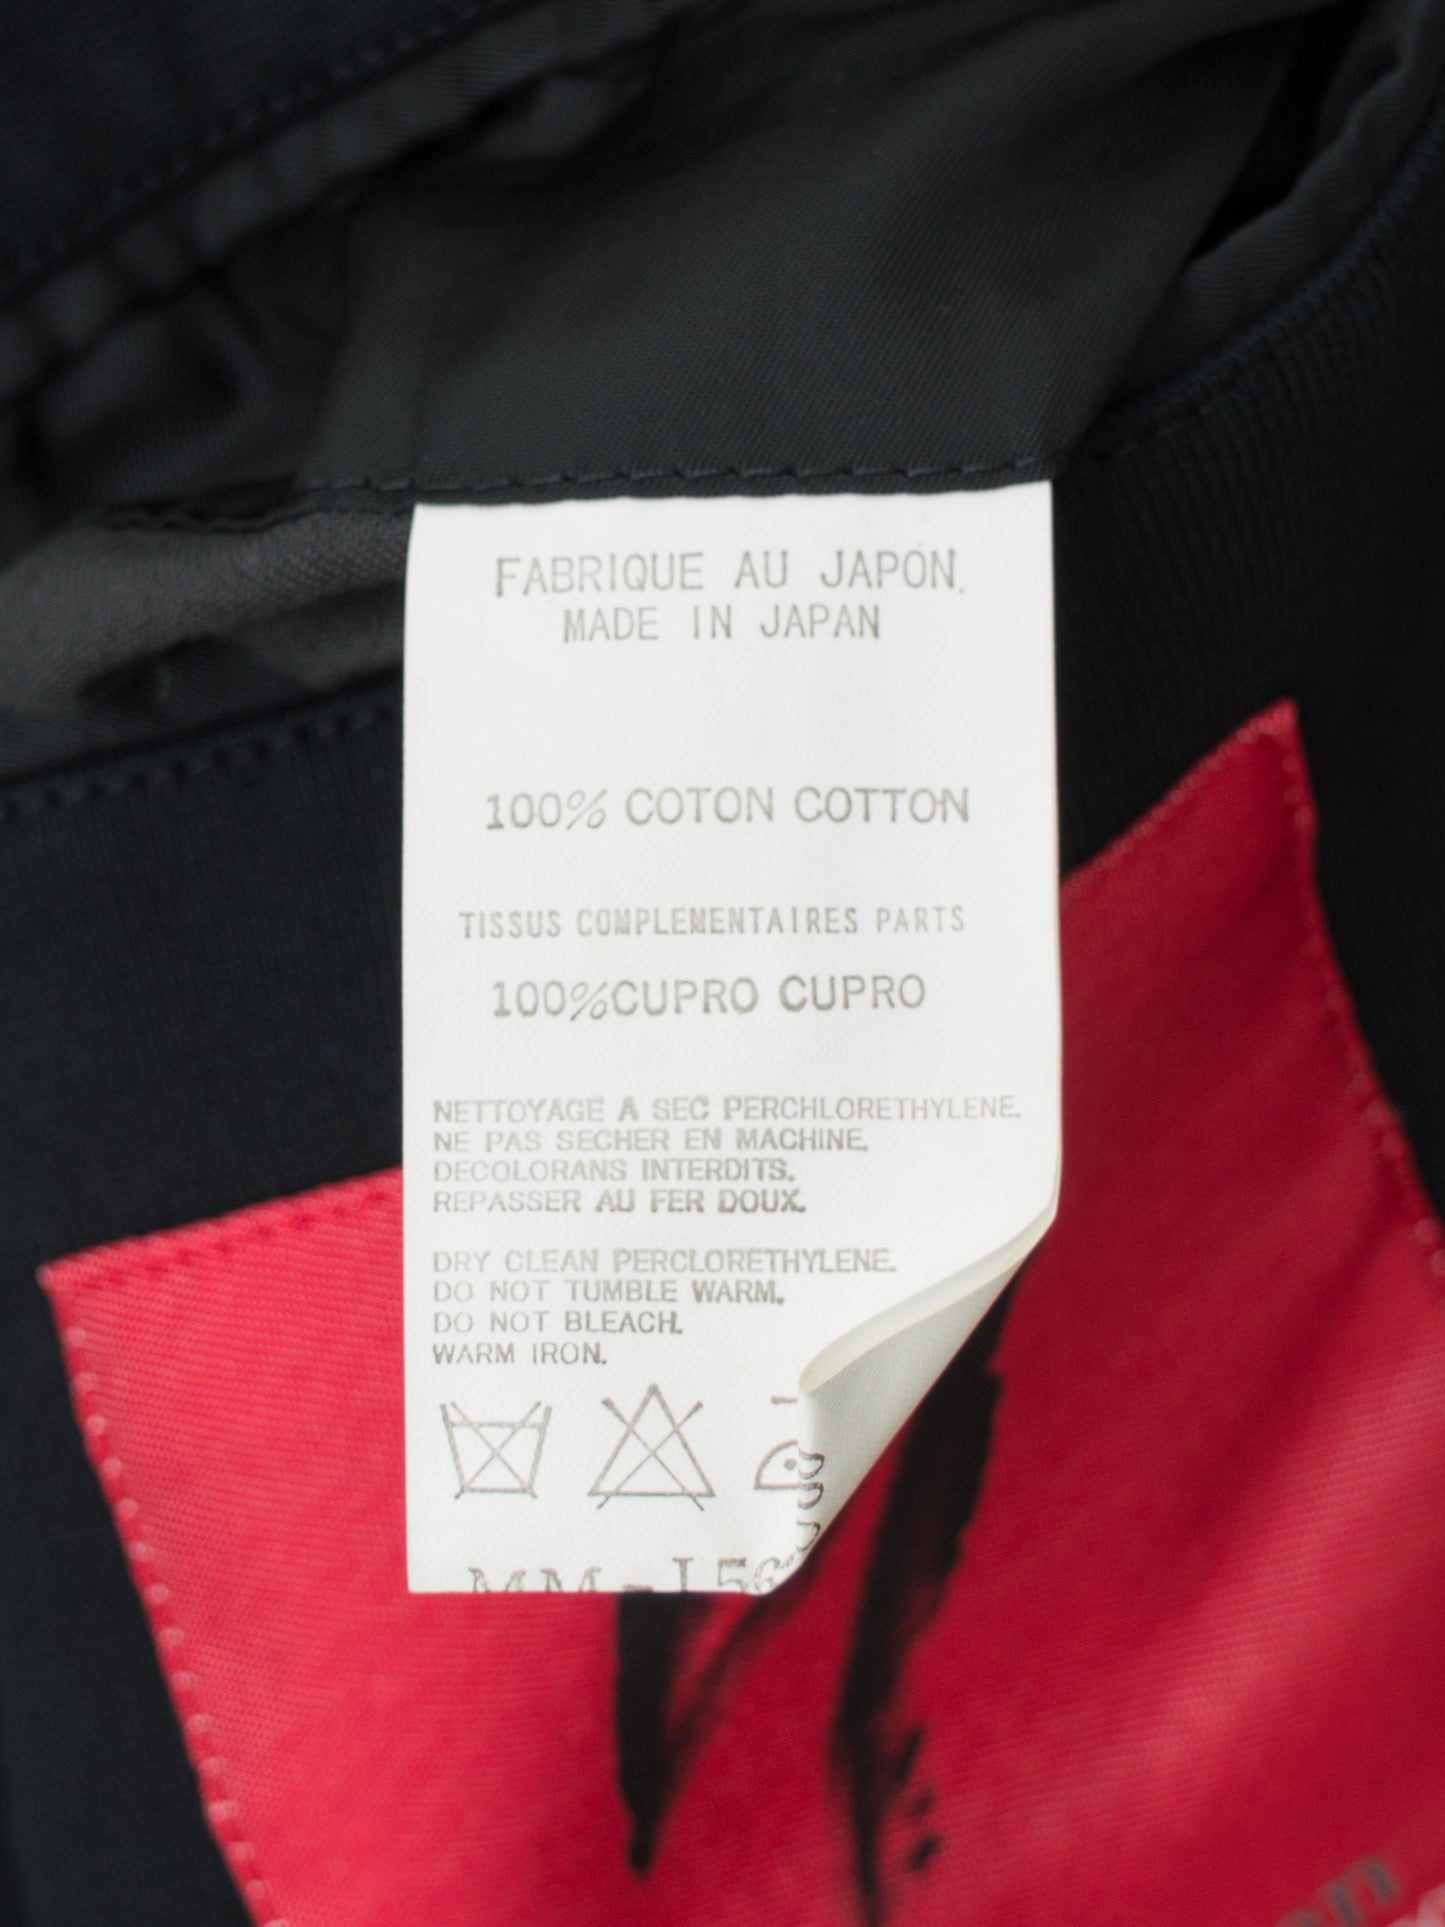 knit tailored jacket navy ∙ cotton ∙ medium